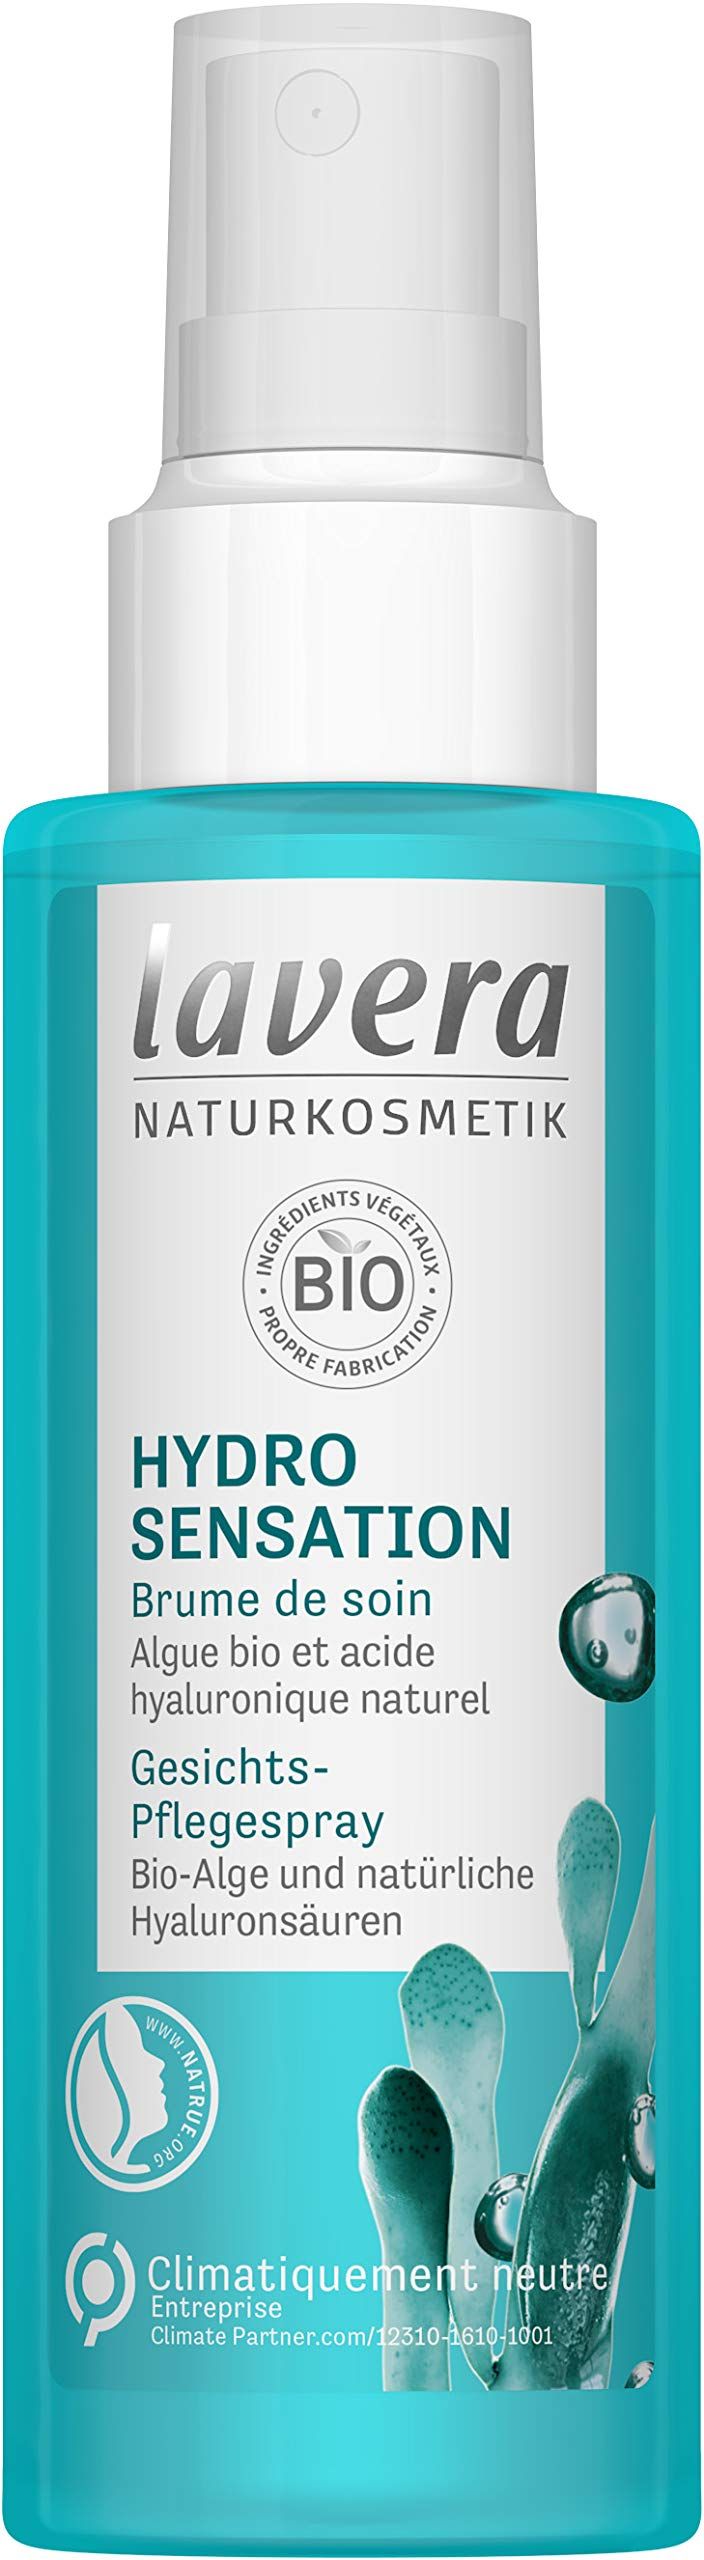 Hydro Sensation Spray 